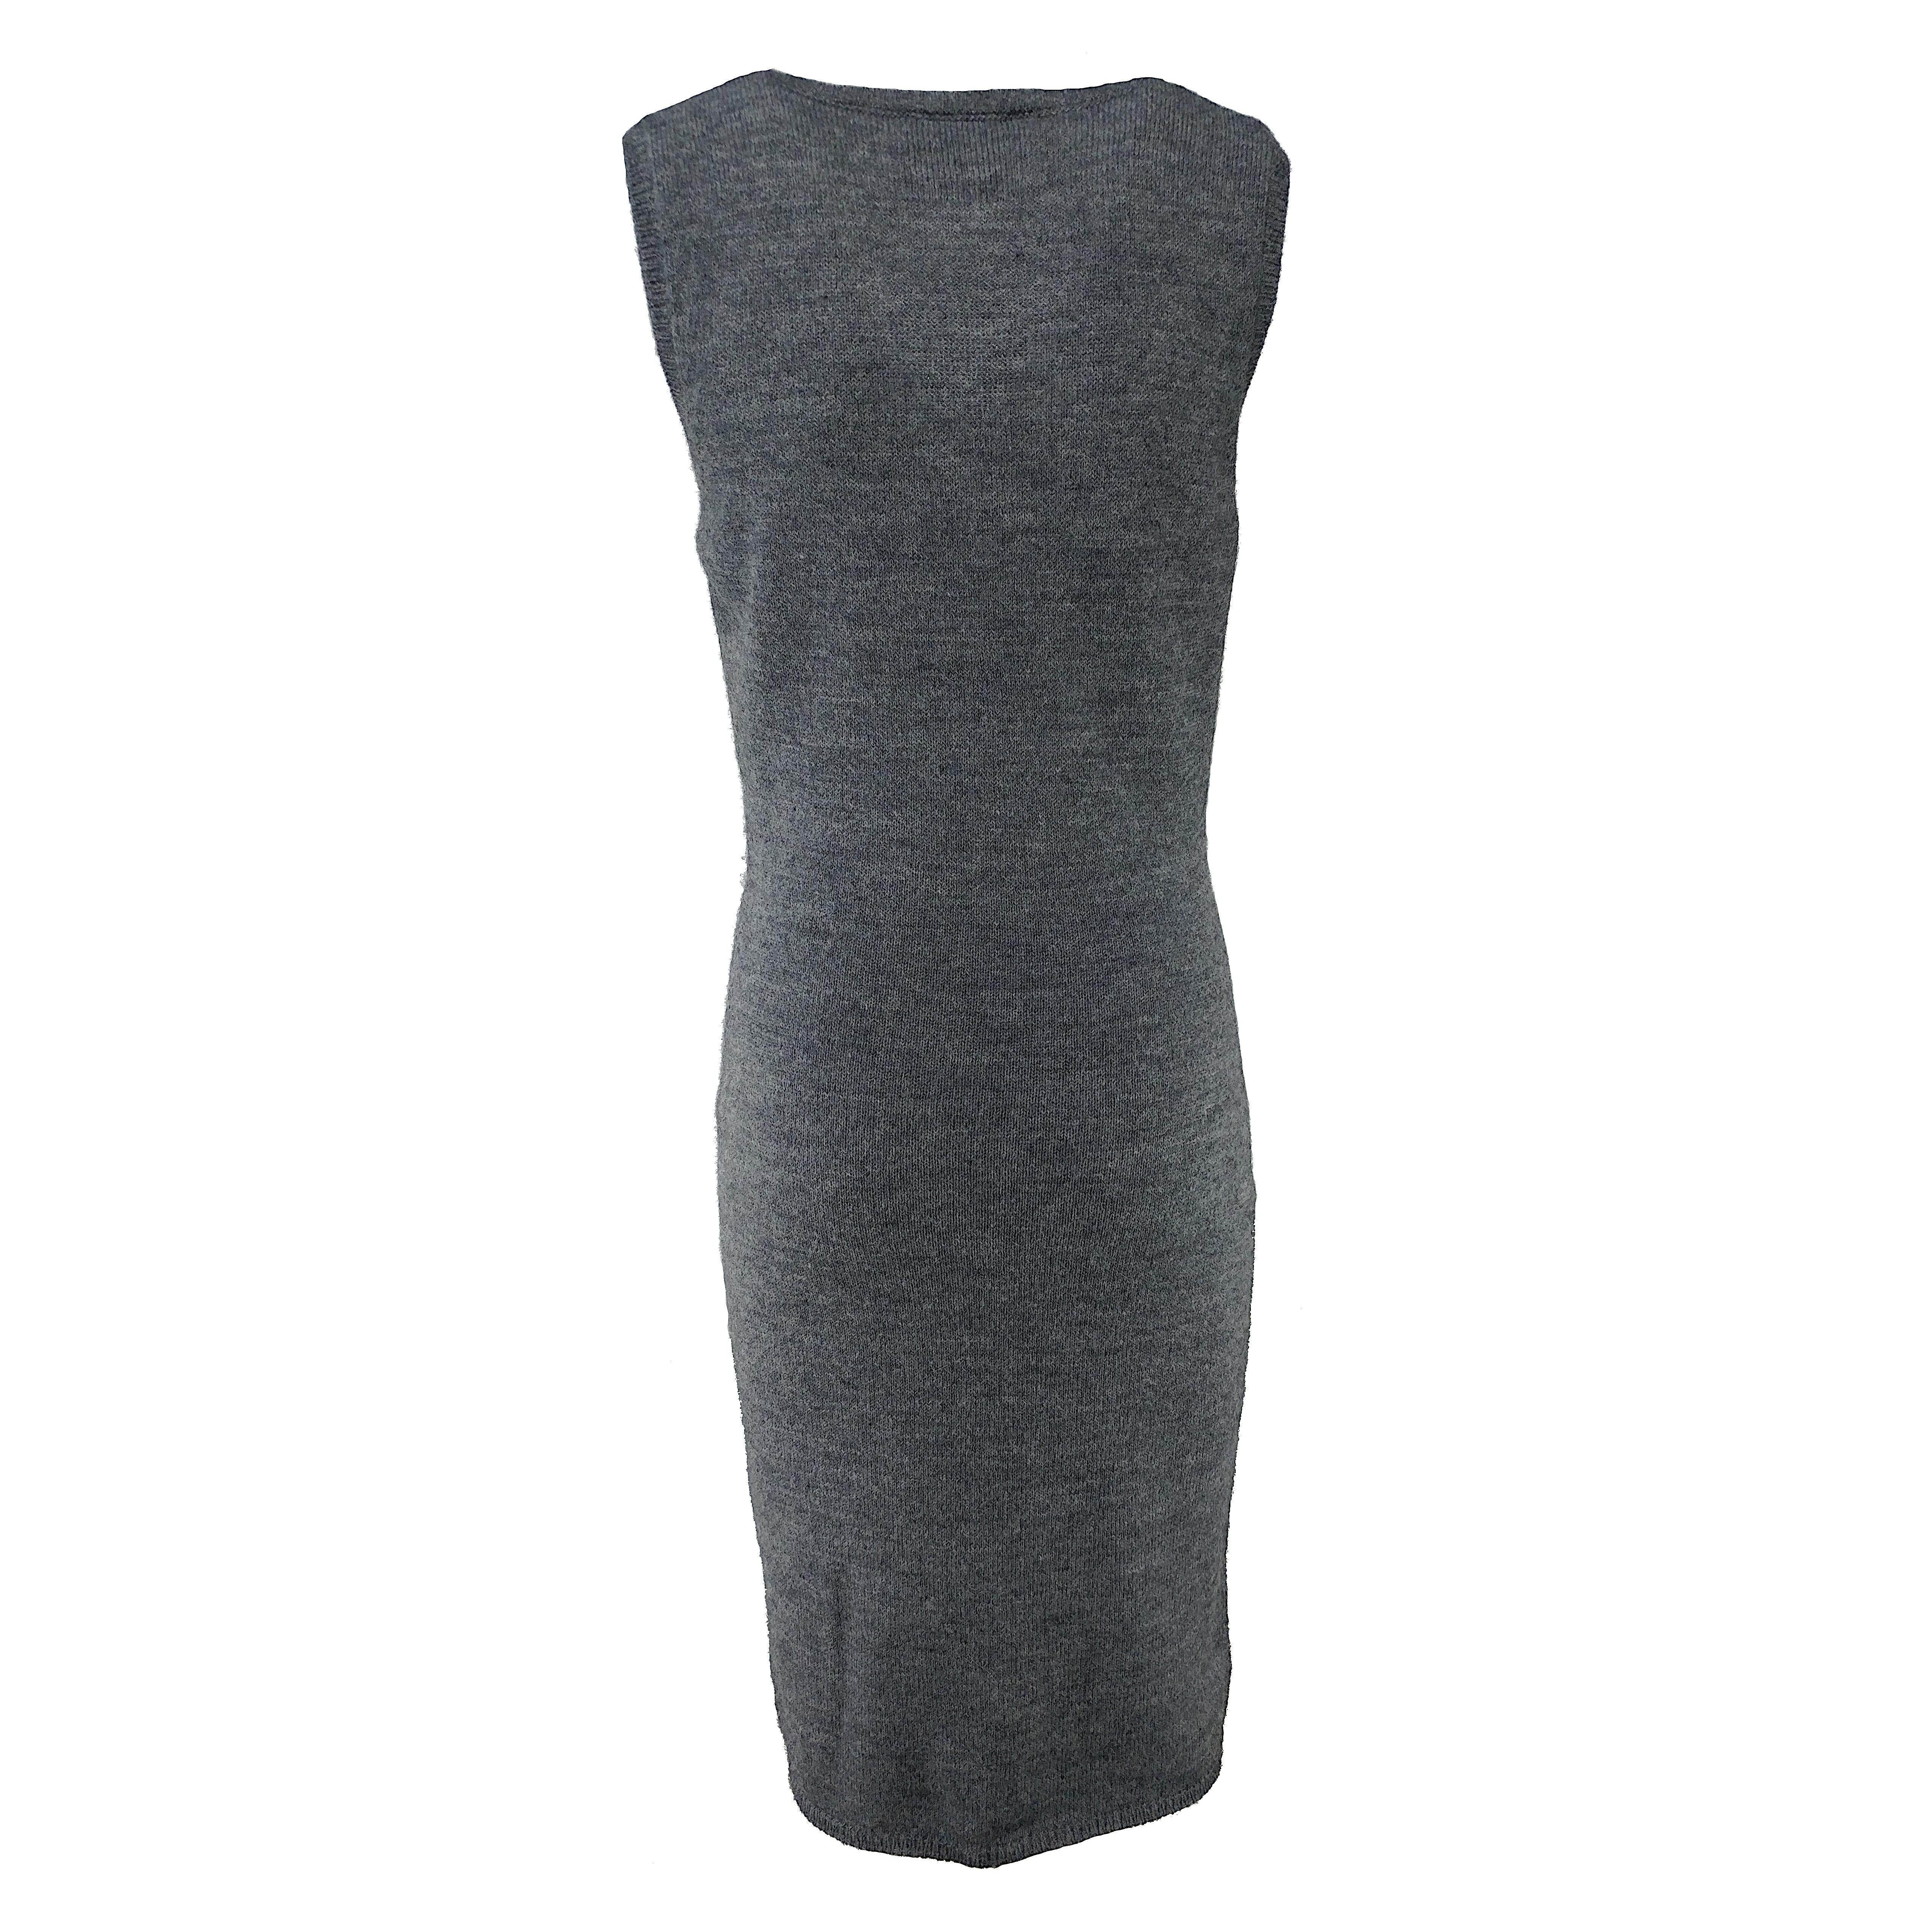 Gray DOLCE & GABBANA - Grey Alpaca Wool Knit Bodycon Sleeveless Dress  Size 6US 38EU For Sale